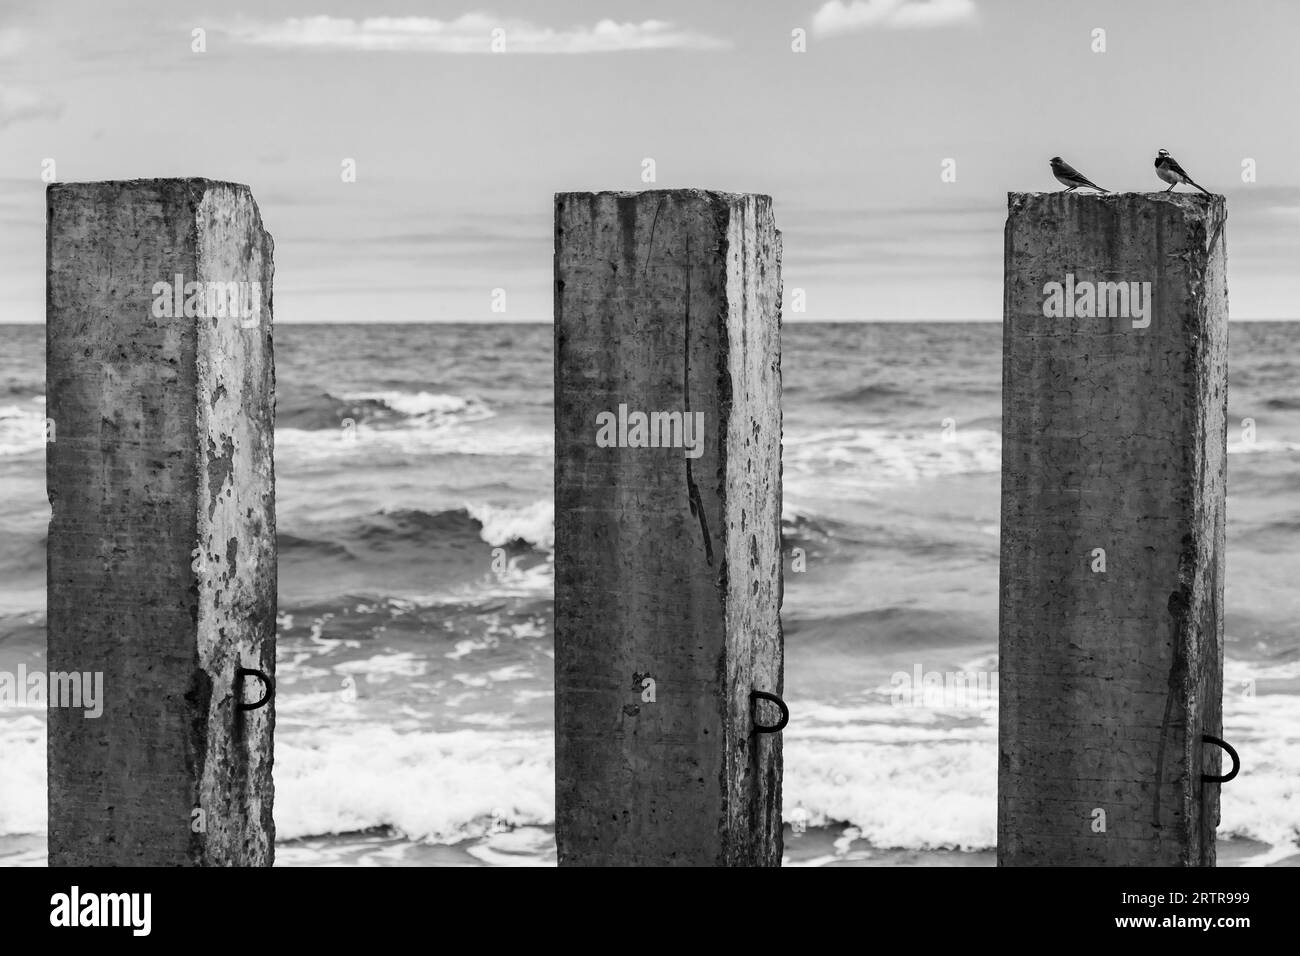 Deux petits oiseaux sont sur un pilier en béton. Photo en noir et blanc d'un brise-lames cassé monté sur la côte de la mer Baltique Banque D'Images